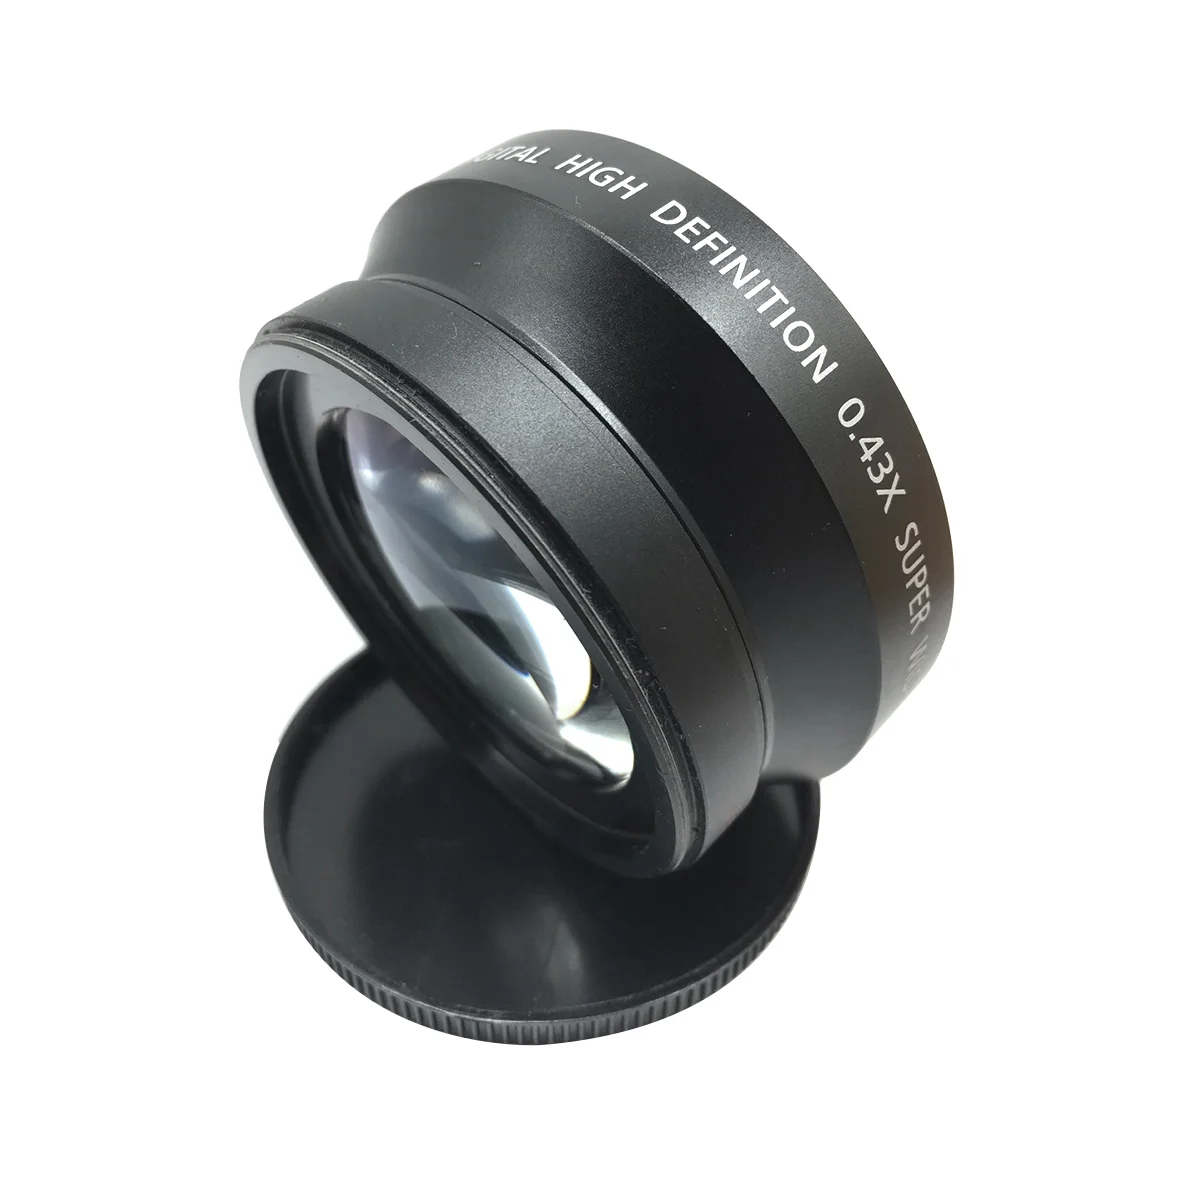 NEWYI 72 мм 0.43X Профессиональный сверхширокоугольный объектив высокой четкости Дополнительный объектив, объектив для камеры, аксессуары для камеры Изображение 2